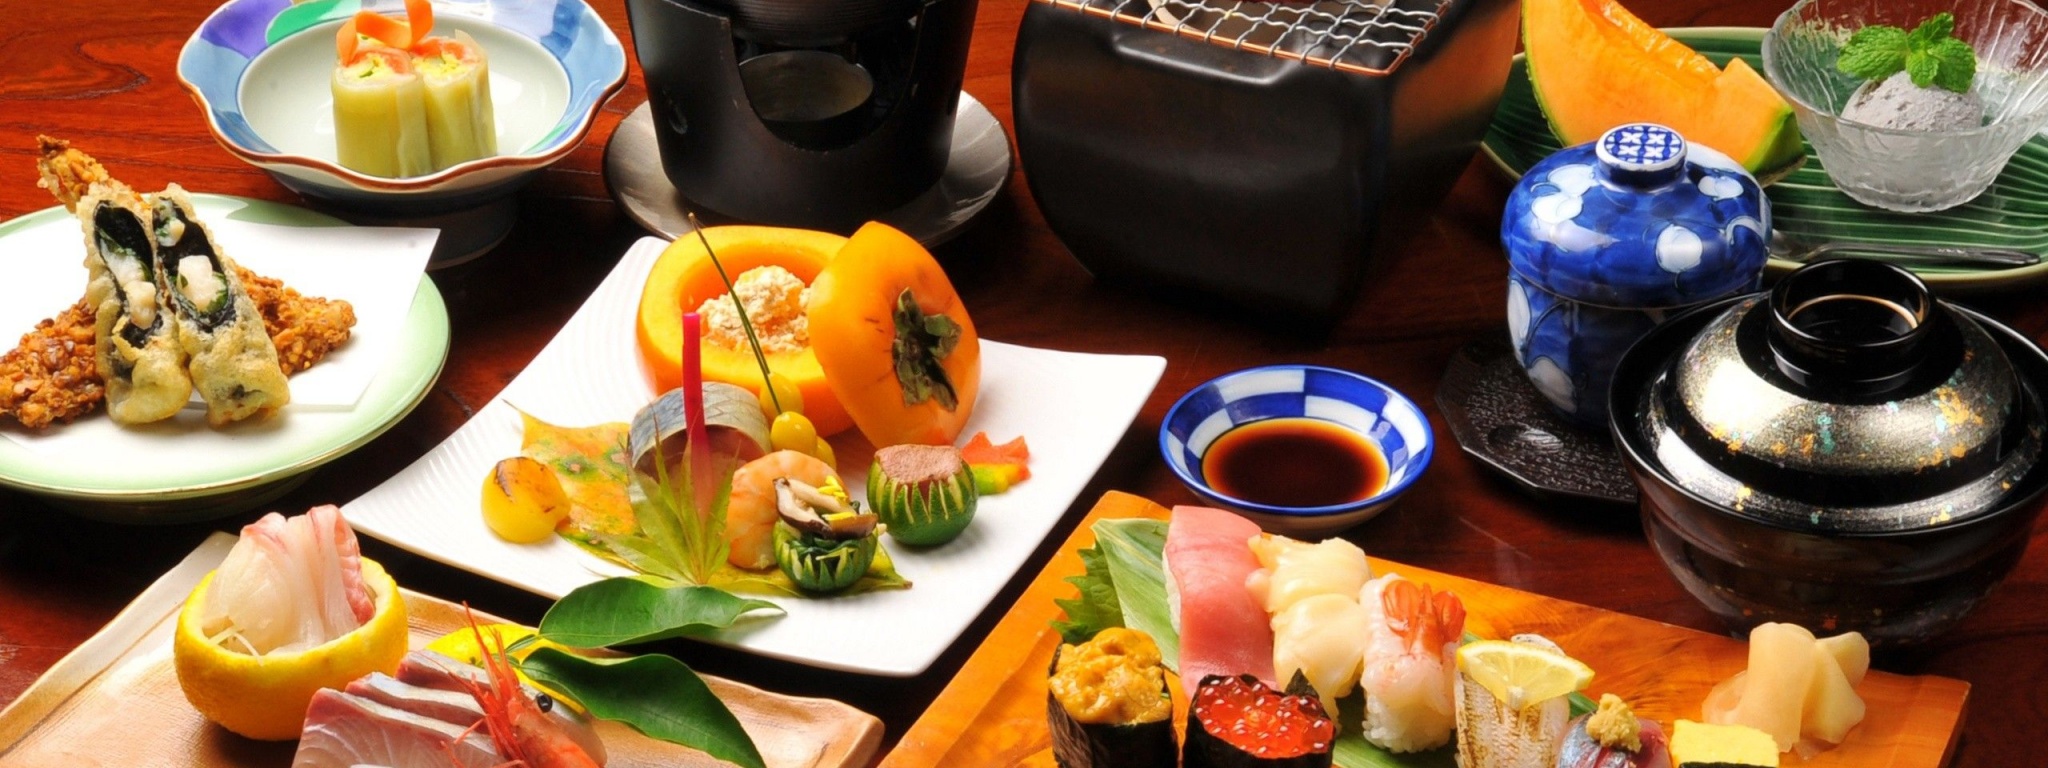 Food Japanese Sushi Cantaloupes Sushi Rolls